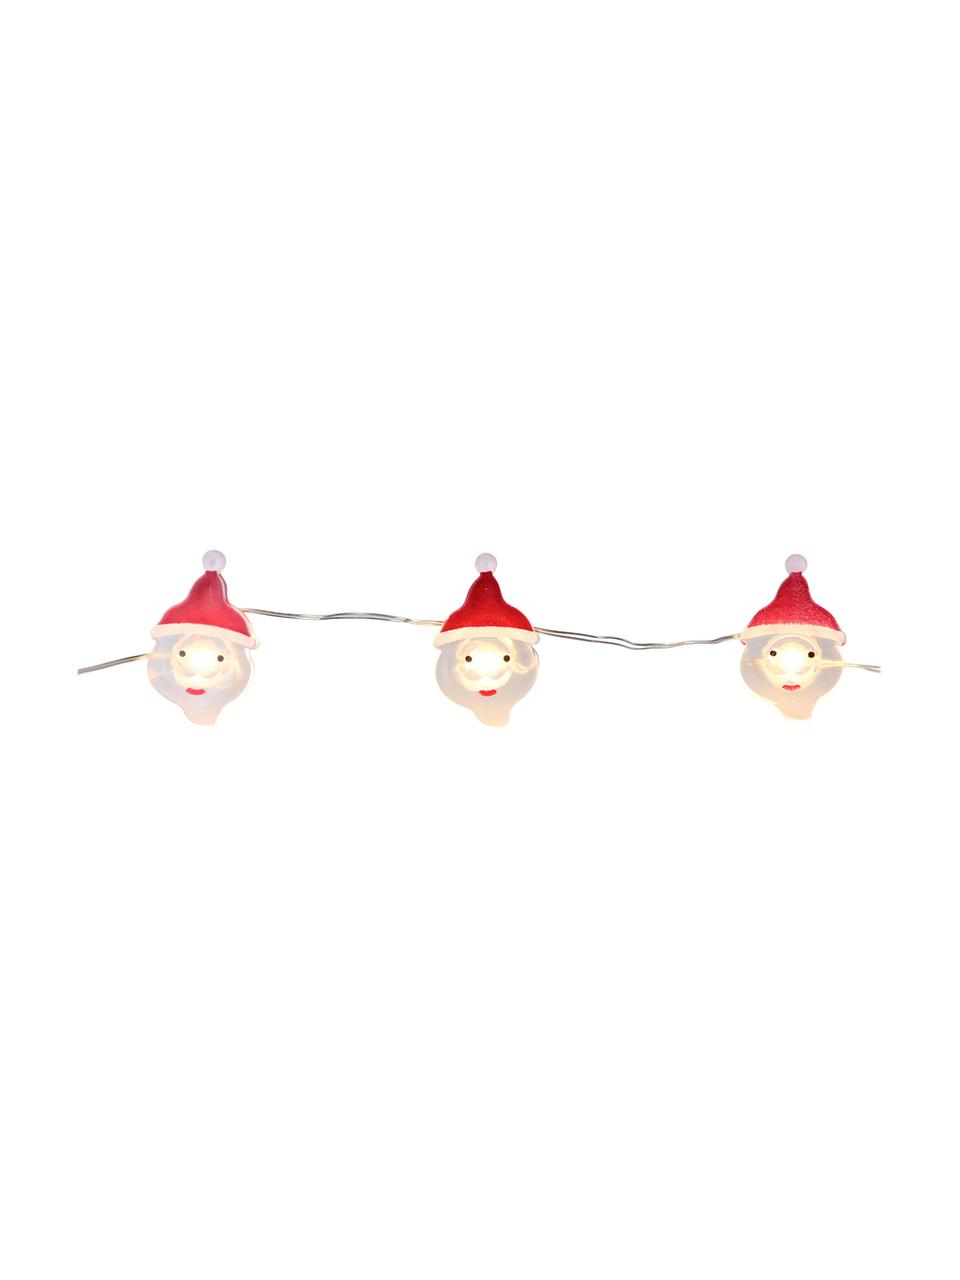 Ghirlanda a LED Santa Claus, Filo metallico, vetro acrilico, metallo, materiale sintetico, Bianco, rosso, Lung. 220 cm